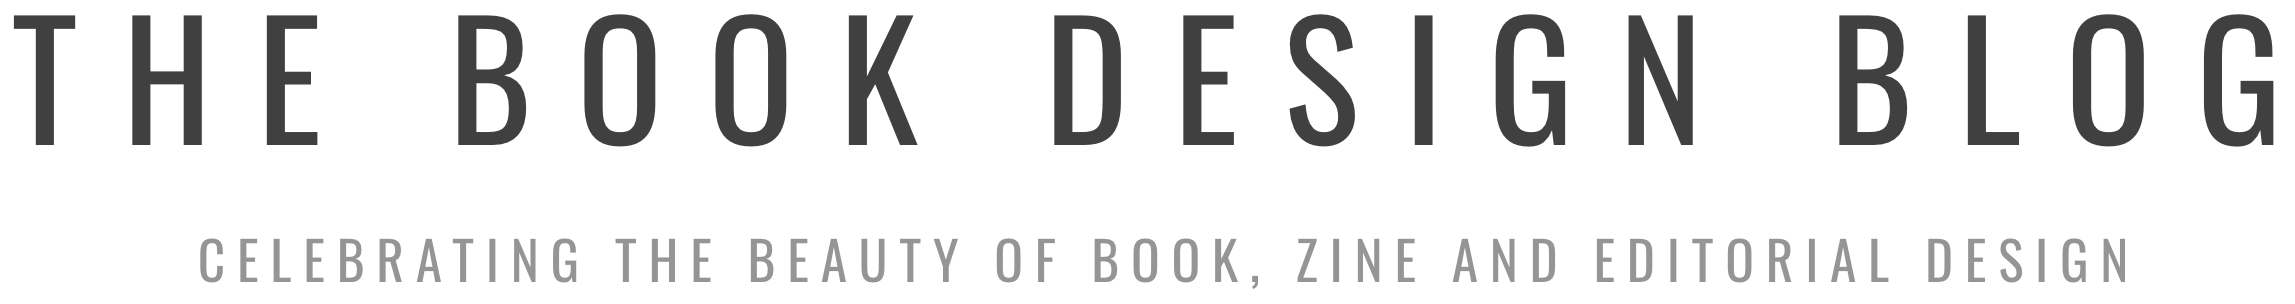 The Book Design Blog logo